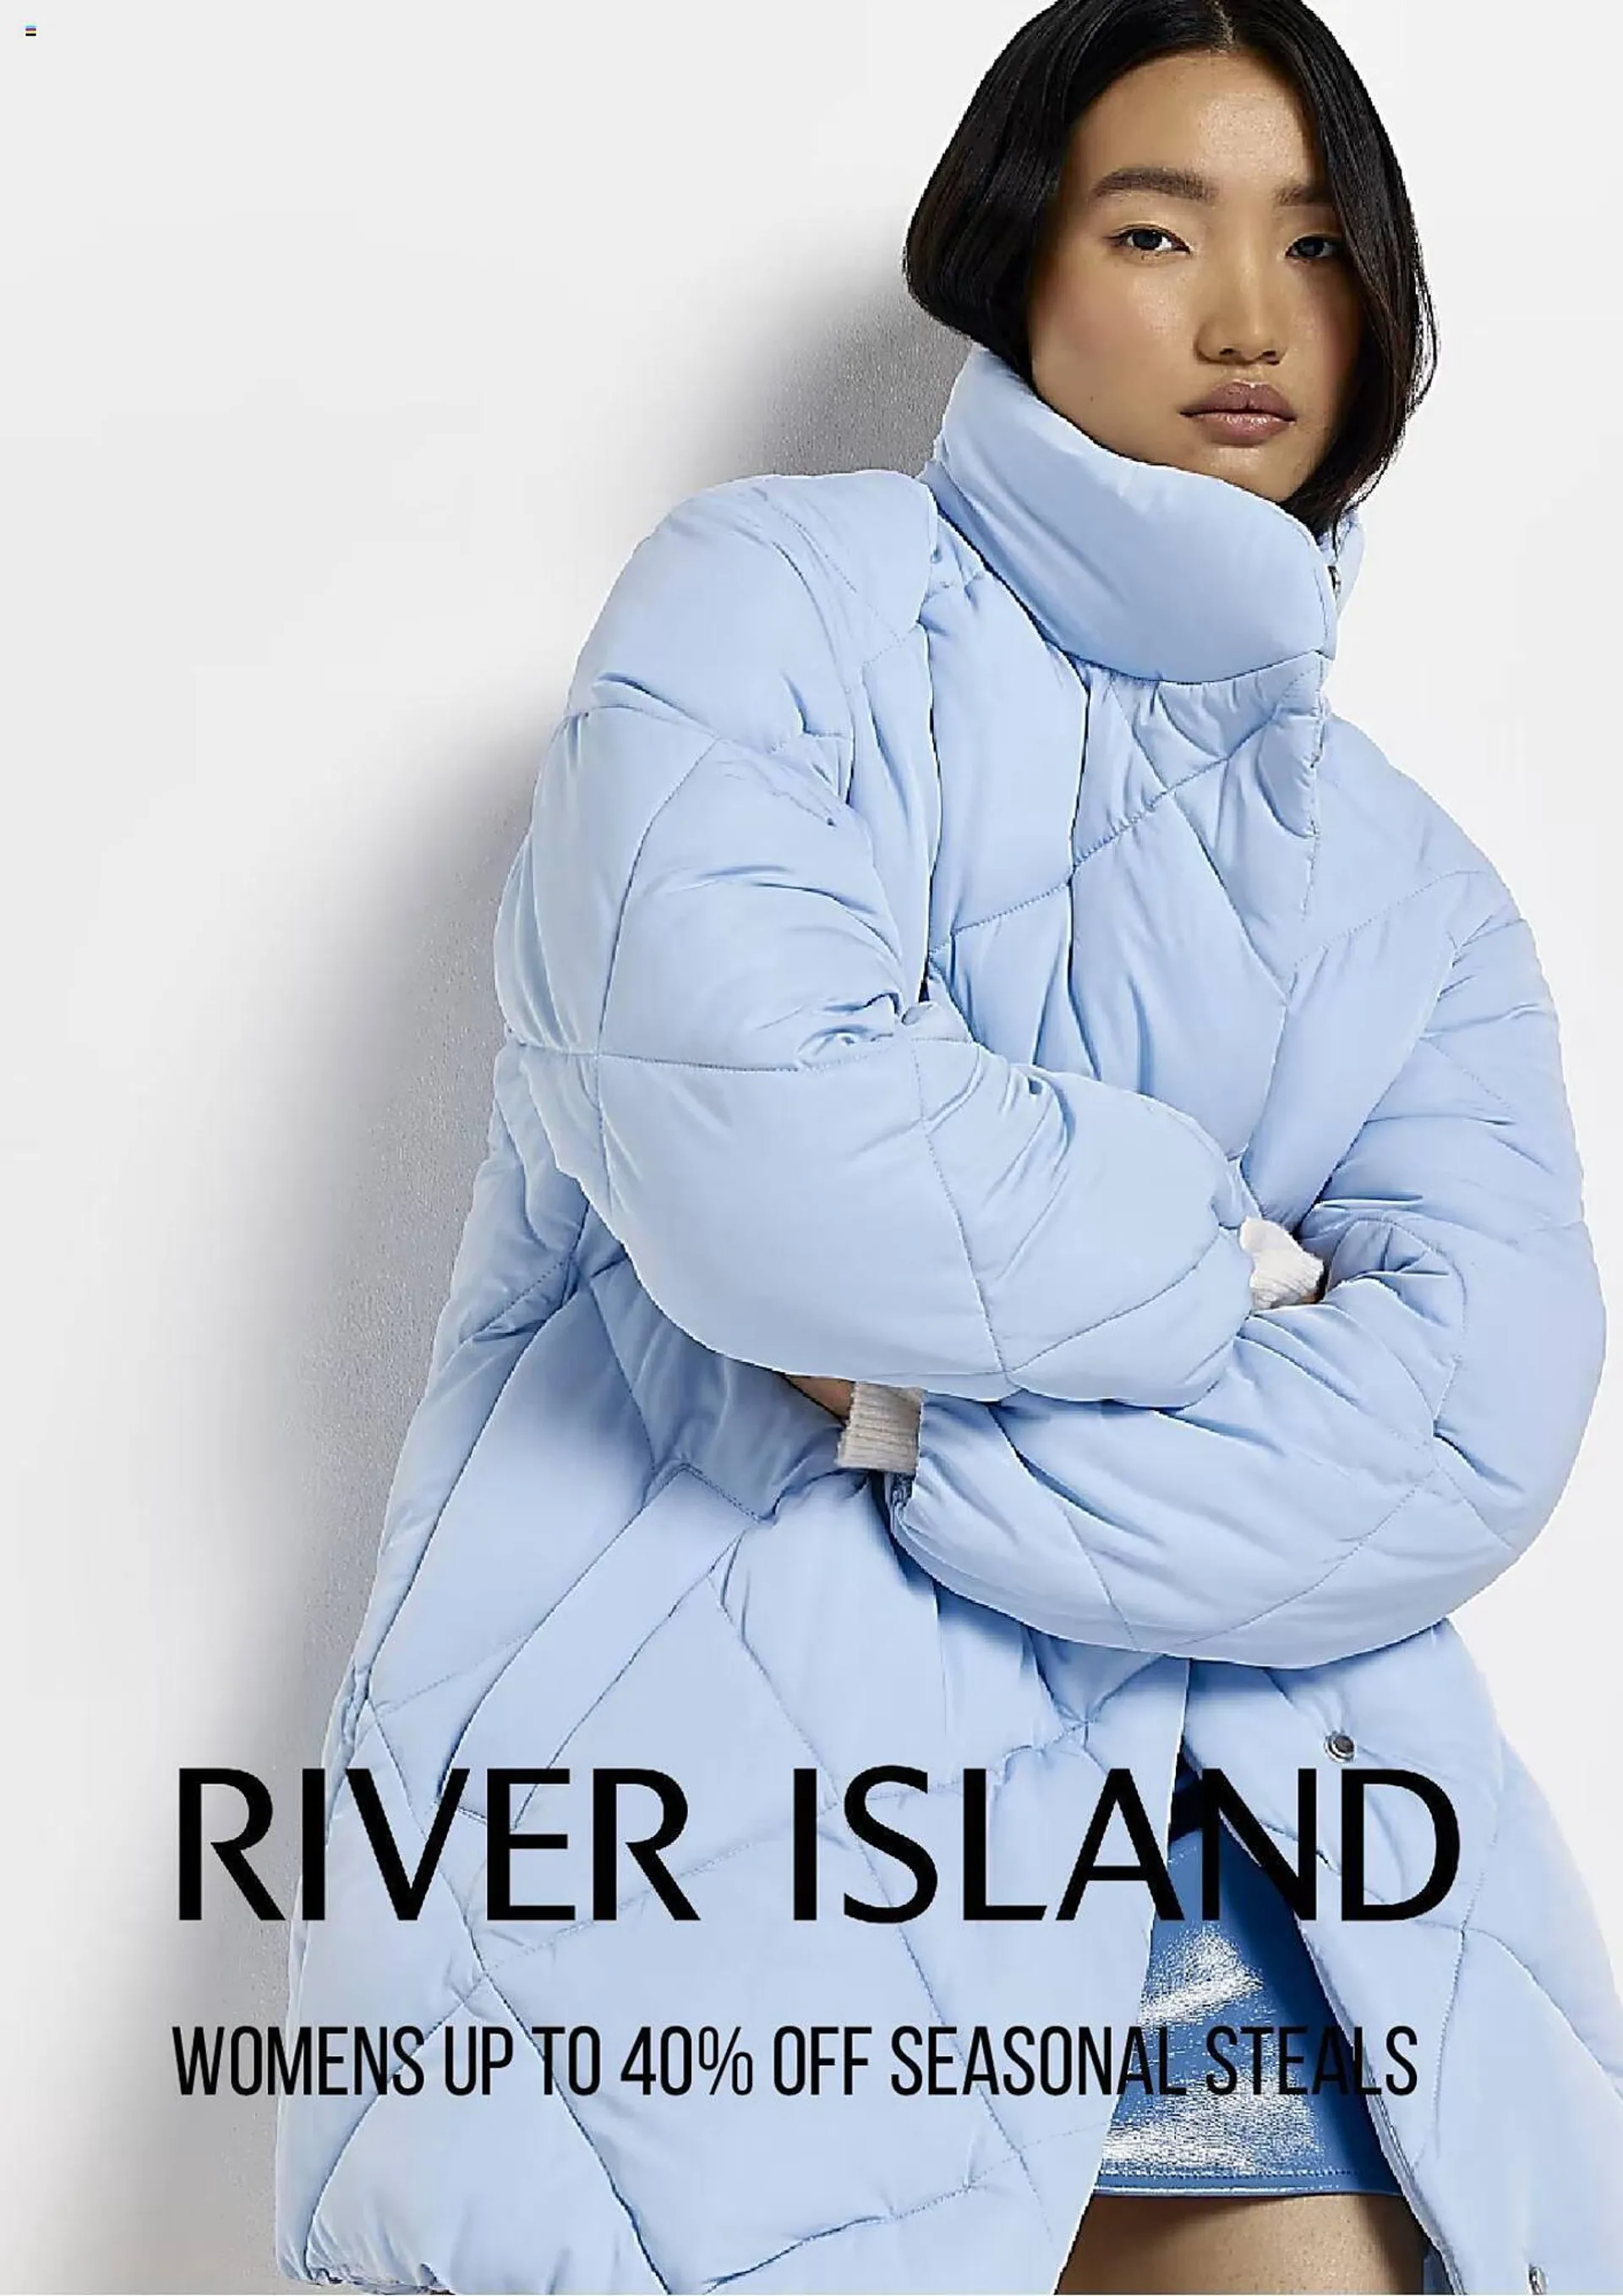 River Island leaflet - 1